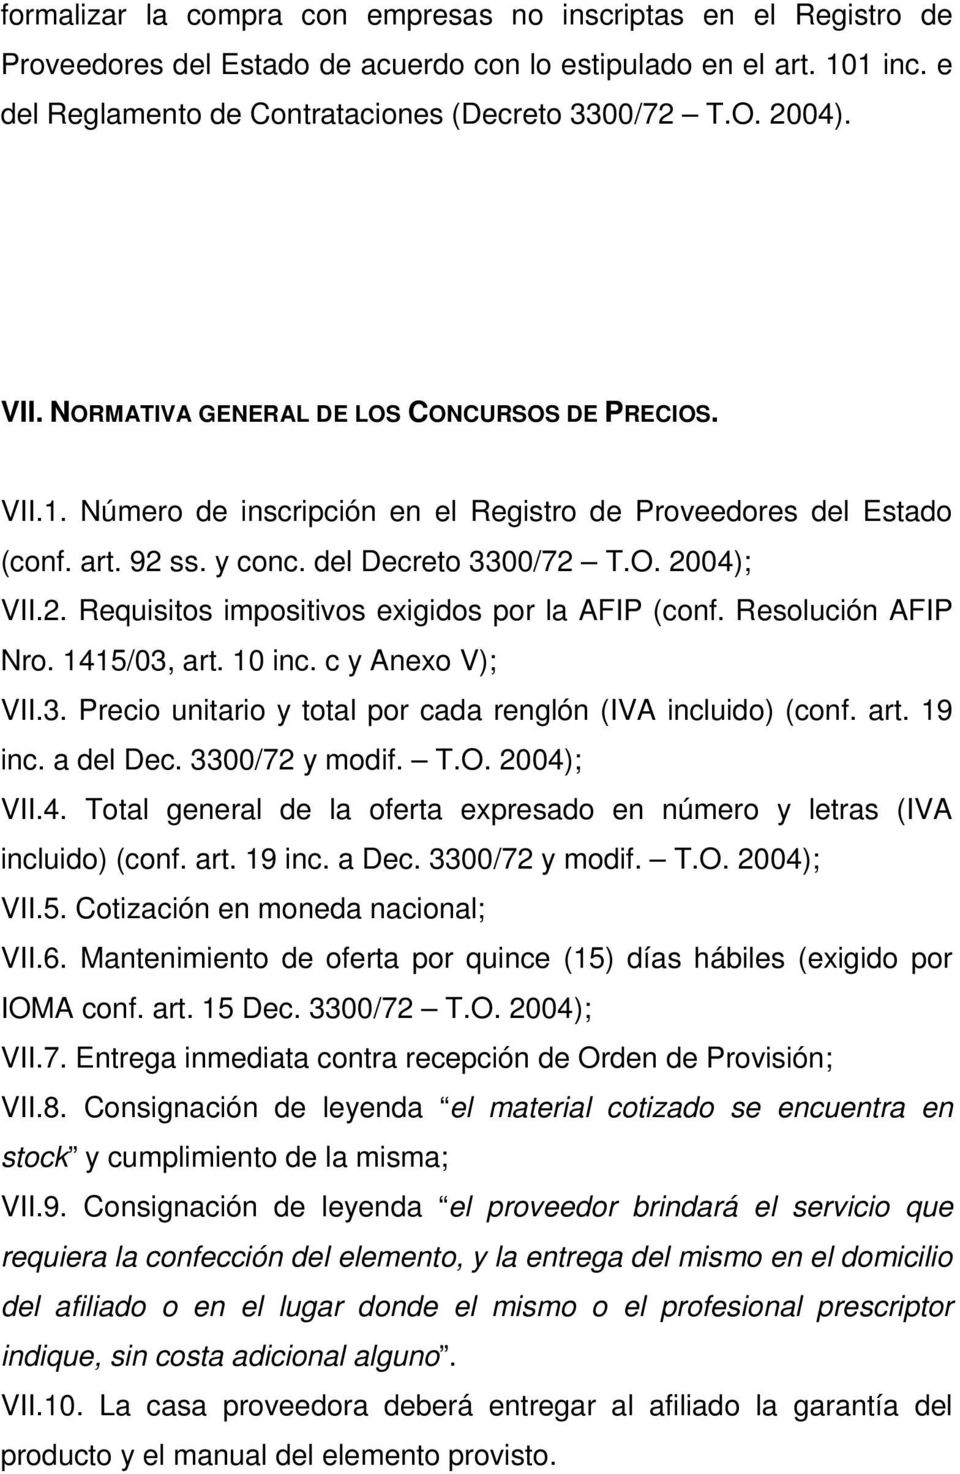 Resolución AFIP Nro. 1415/03, art. 10 inc. c y Anexo V); VII.3. Precio unitario y total por cada renglón (IVA incluido) (conf. art. 19 inc. a del Dec. 3300/72 y modif. T.O. 2004); VII.4. Total general de la oferta expresado en número y letras (IVA incluido) (conf.